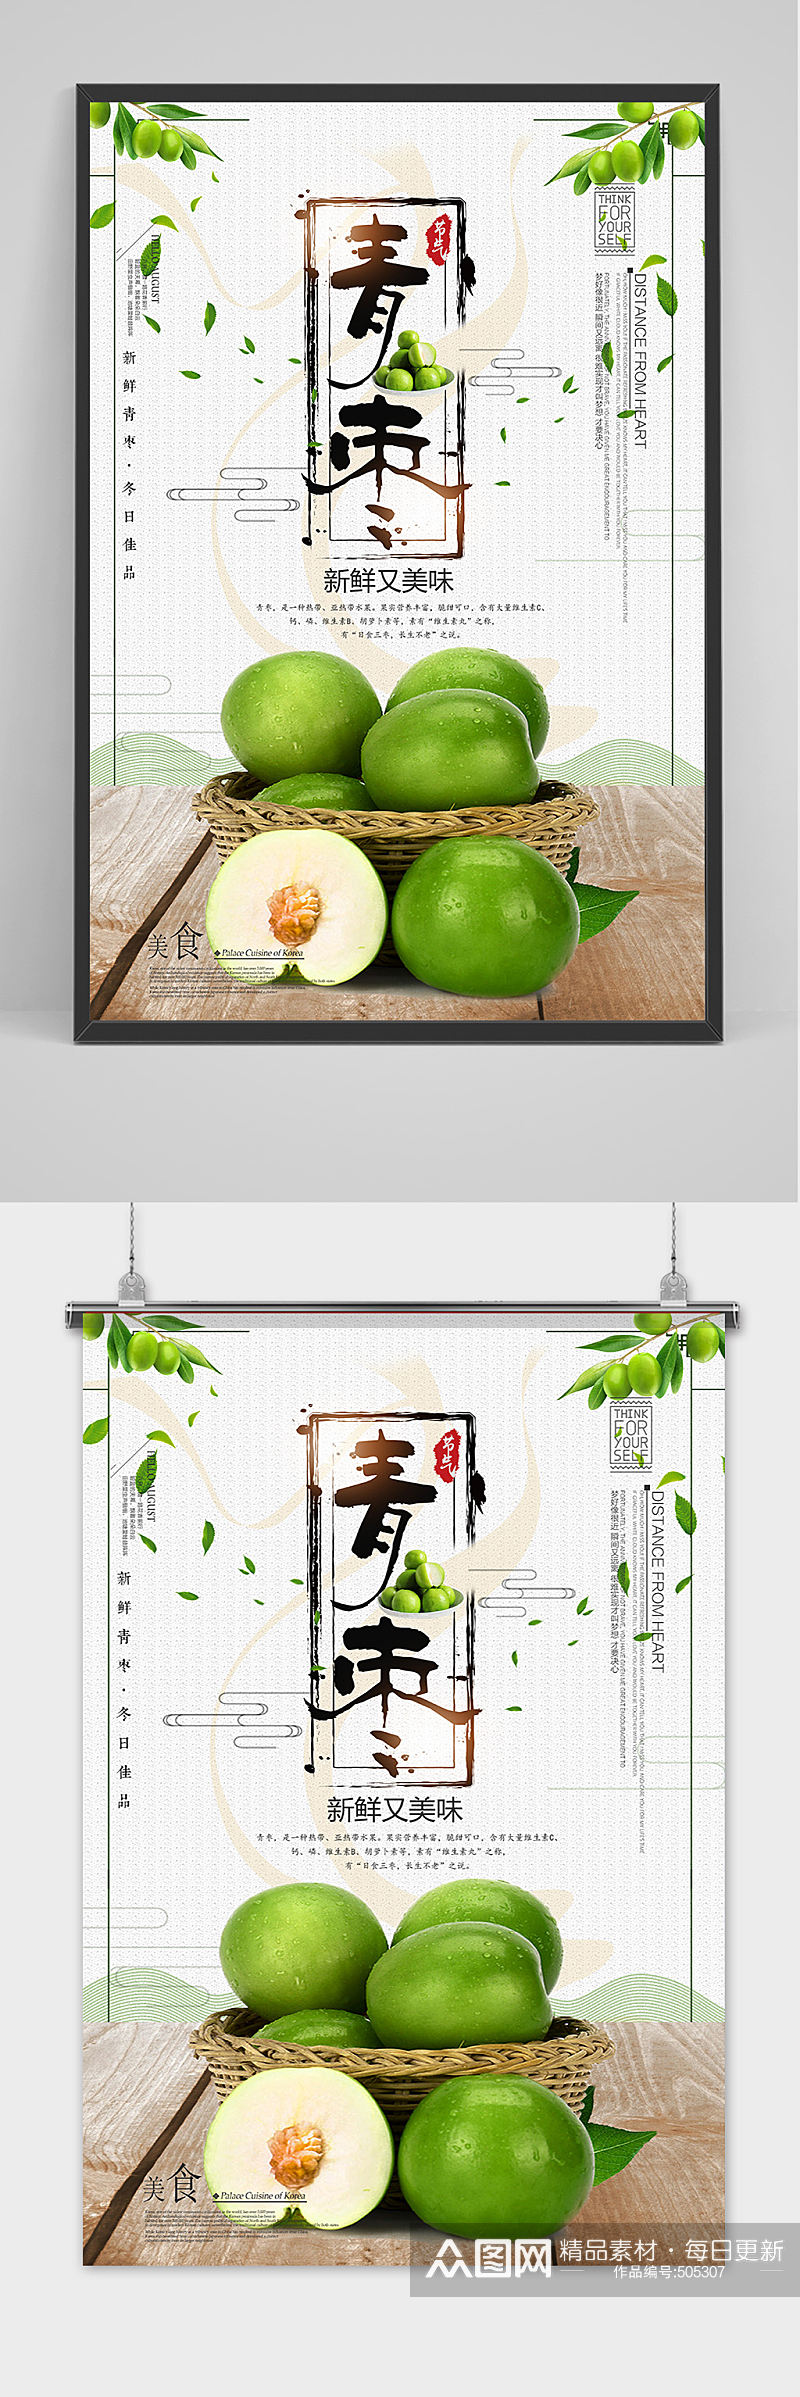 冬季中国风青枣美食水果宣传海报模版素材